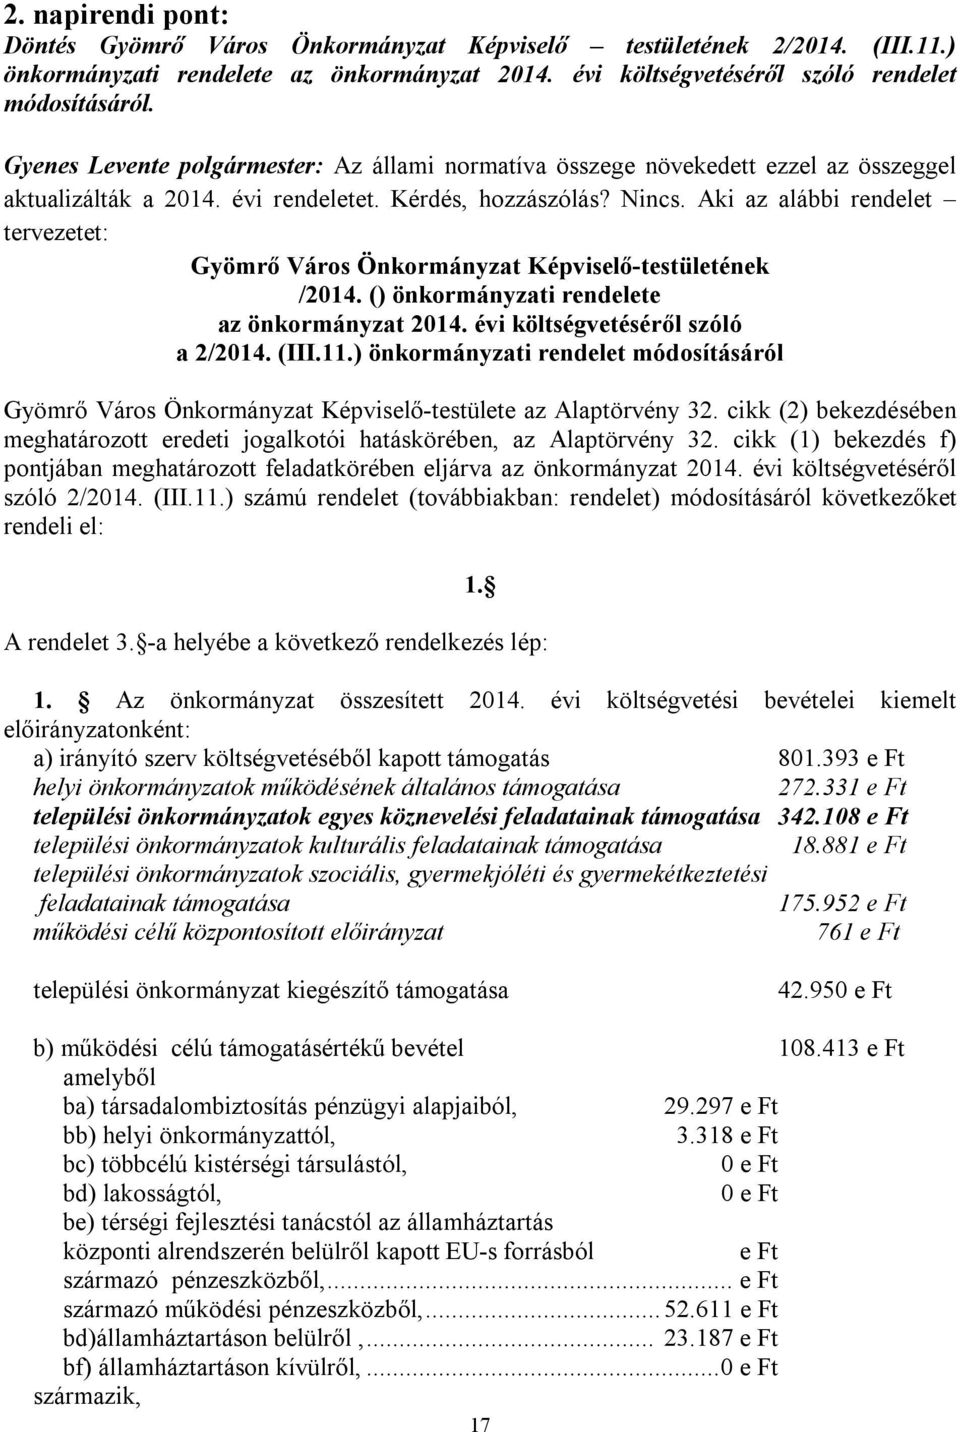 Aki az alábbi rendelet tervezetet: Gyömrő Város Önkormányzat Képviselő-testületének /2014. () önkormányzati rendelete az önkormányzat 2014. évi költségvetéséről szóló a 2/2014. (III.11.